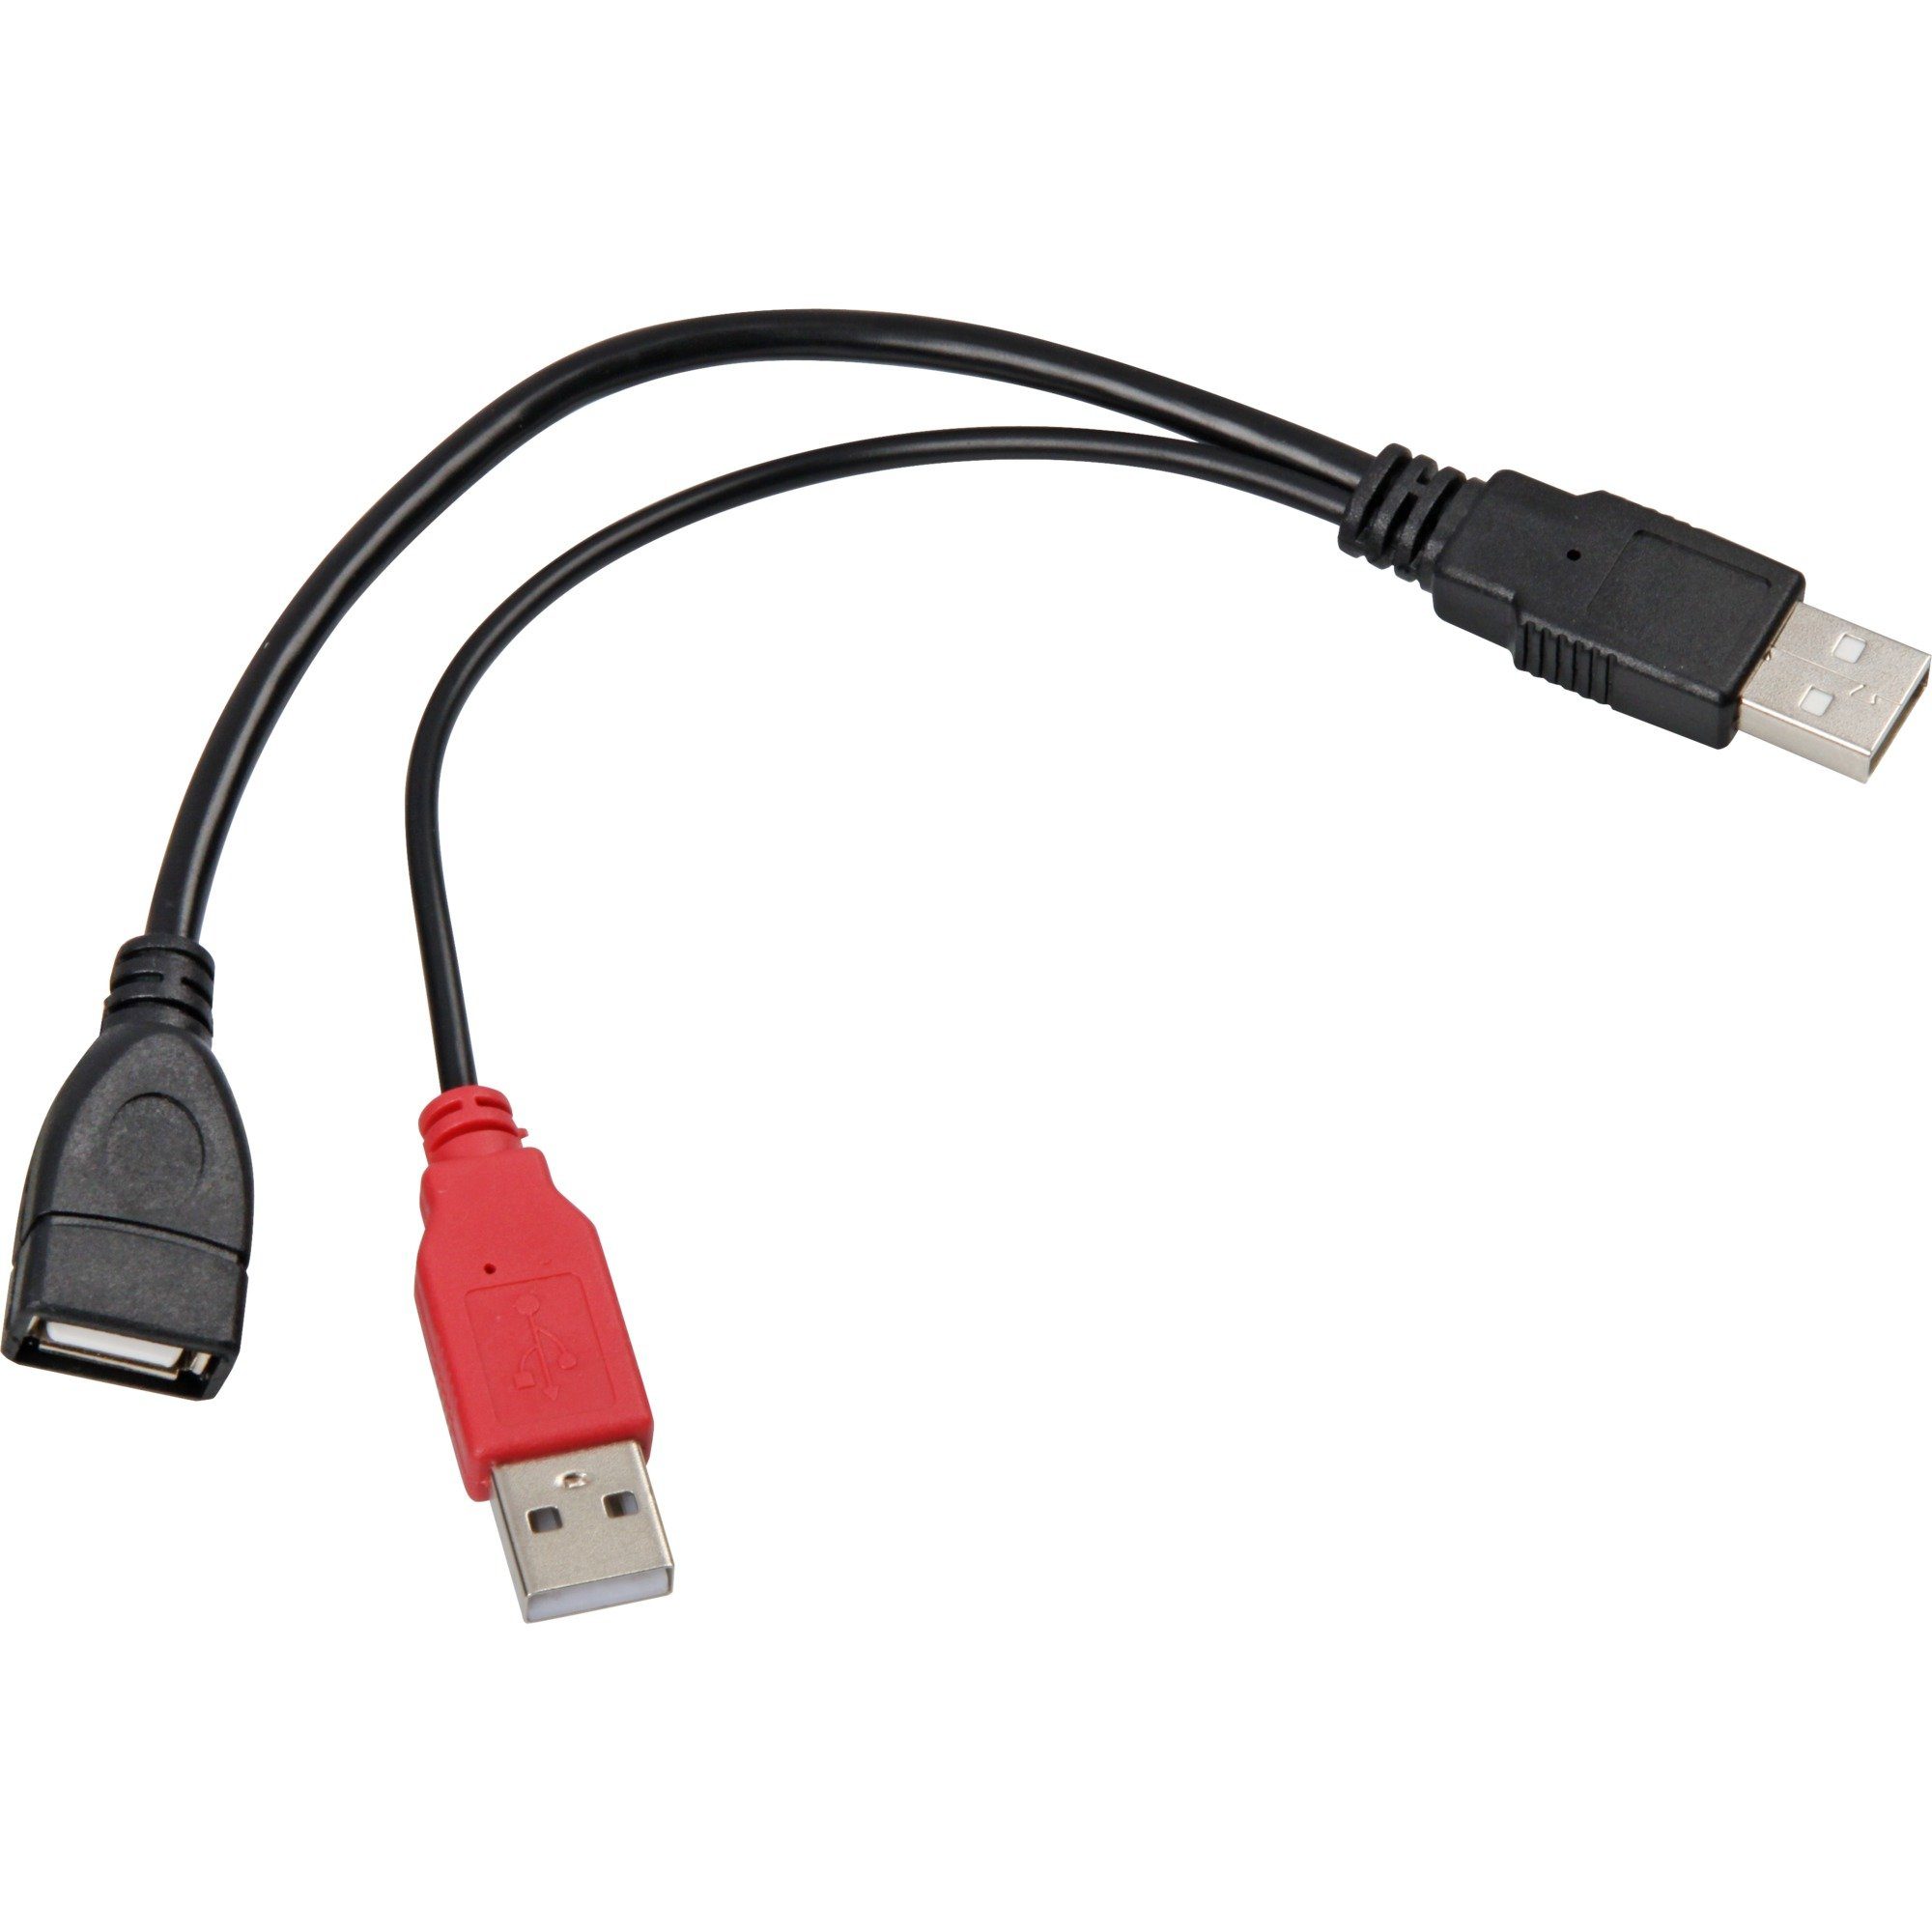 Delock USB 2.0 Y-Kabel, USB-A Stecker + USB-A Stecker > USB-A Buchse USB-Kabel